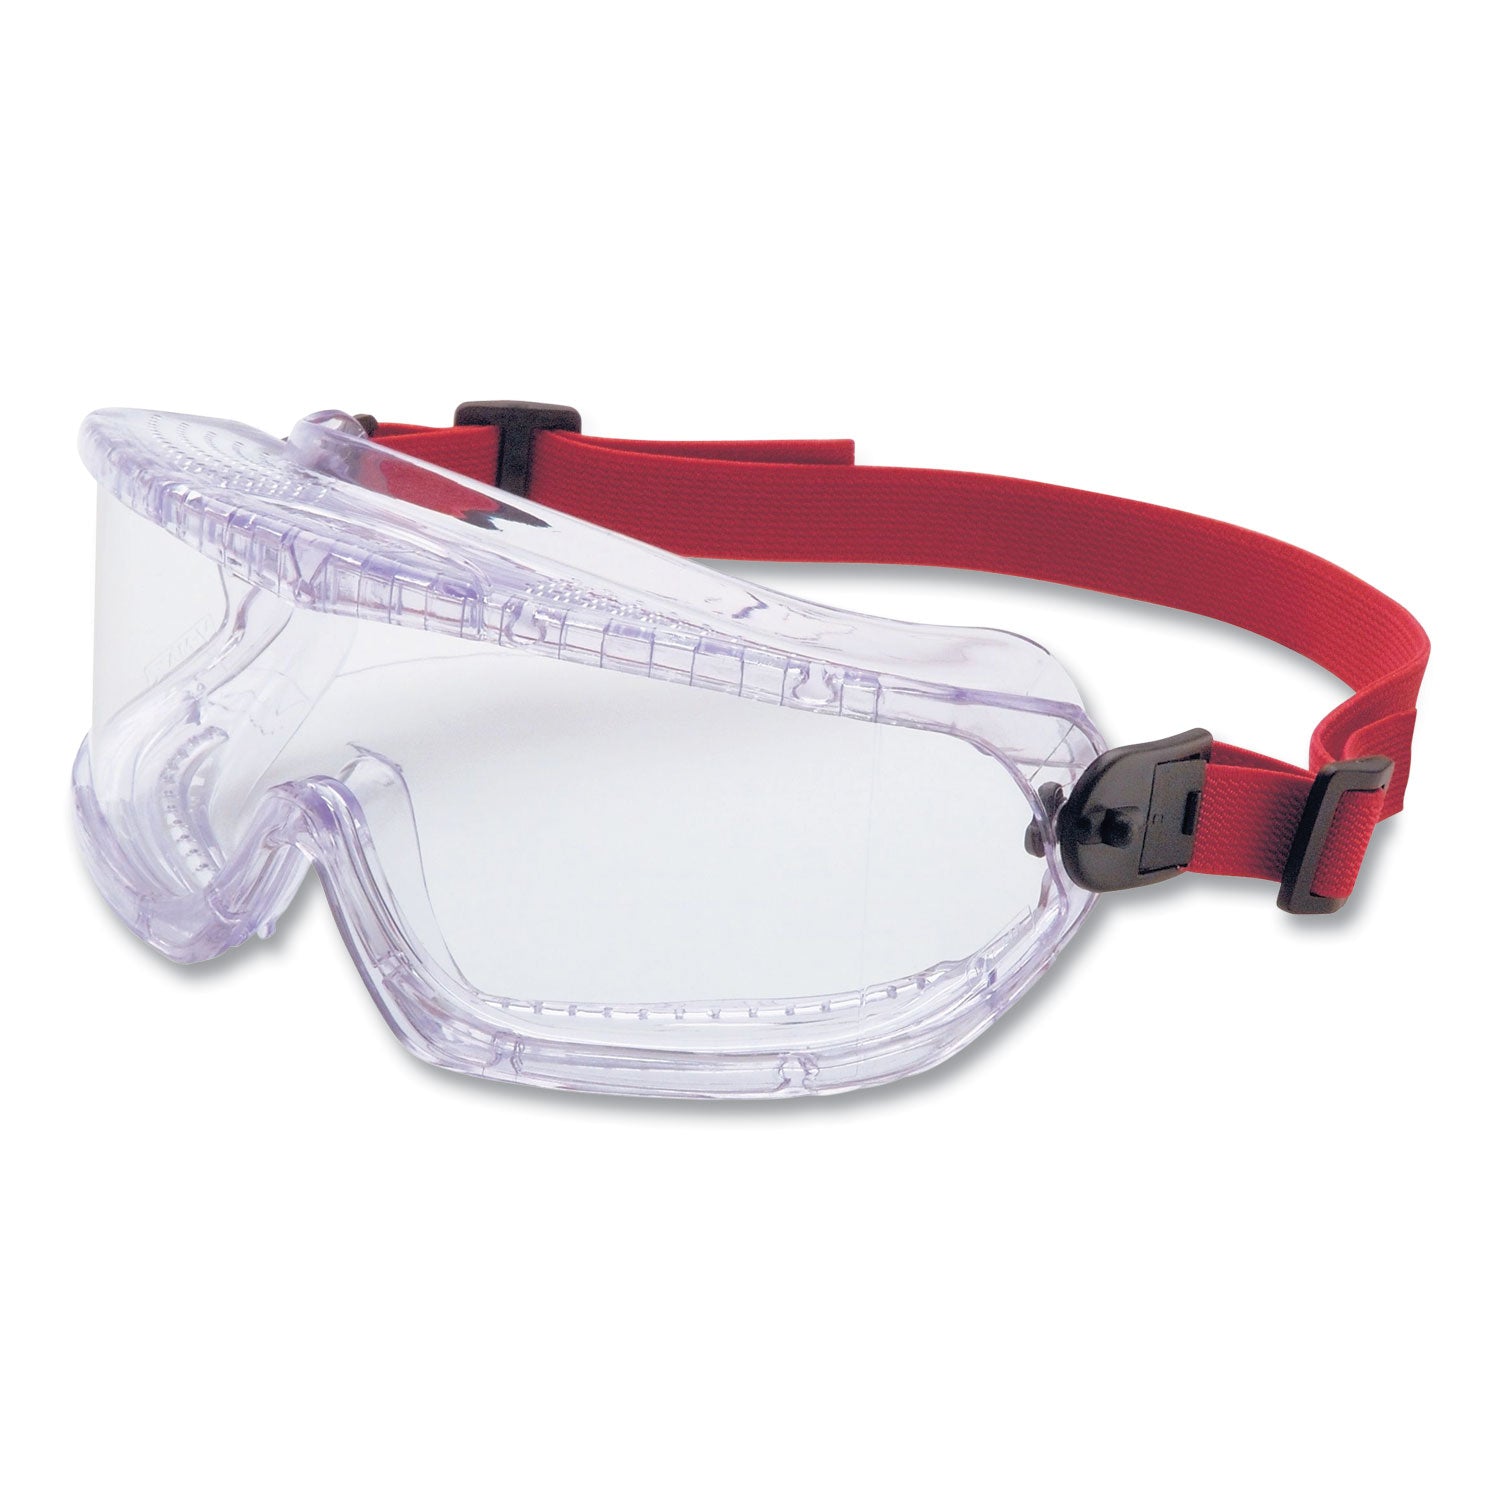 v-maxx-safety-goggles-anti-fog-clear-frame-clear-lens_uvx11250800 - 1